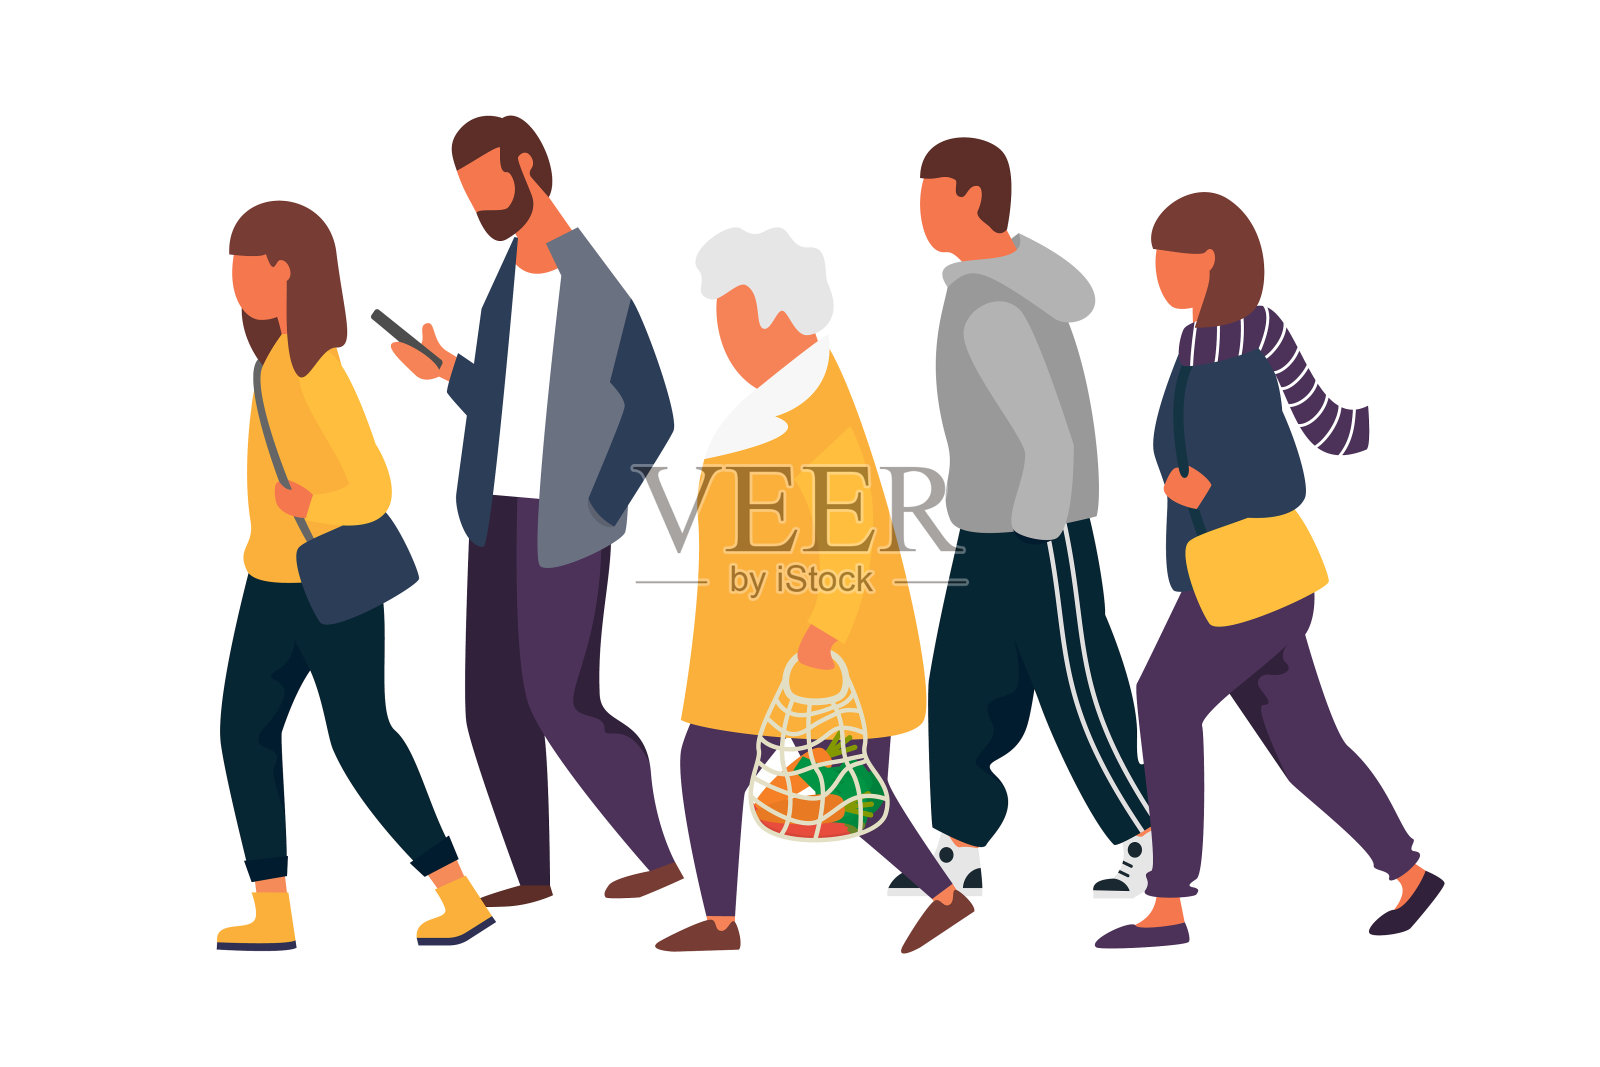 男人和女人的性格。一群穿着秋衣的人在散步。矢量图插画图片素材